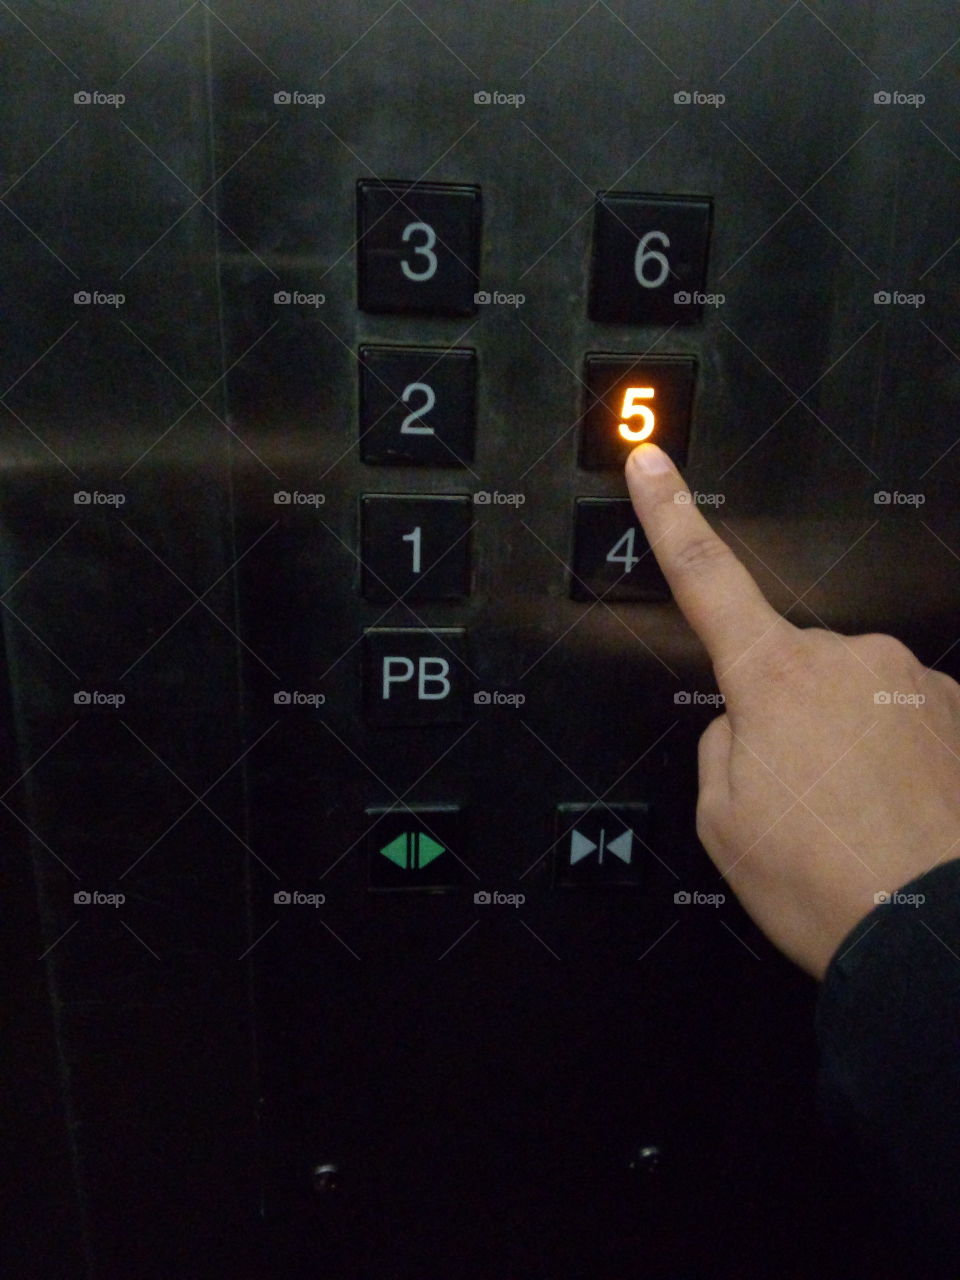 Presionando el botón de elevador... decidir entre subir o bajar...